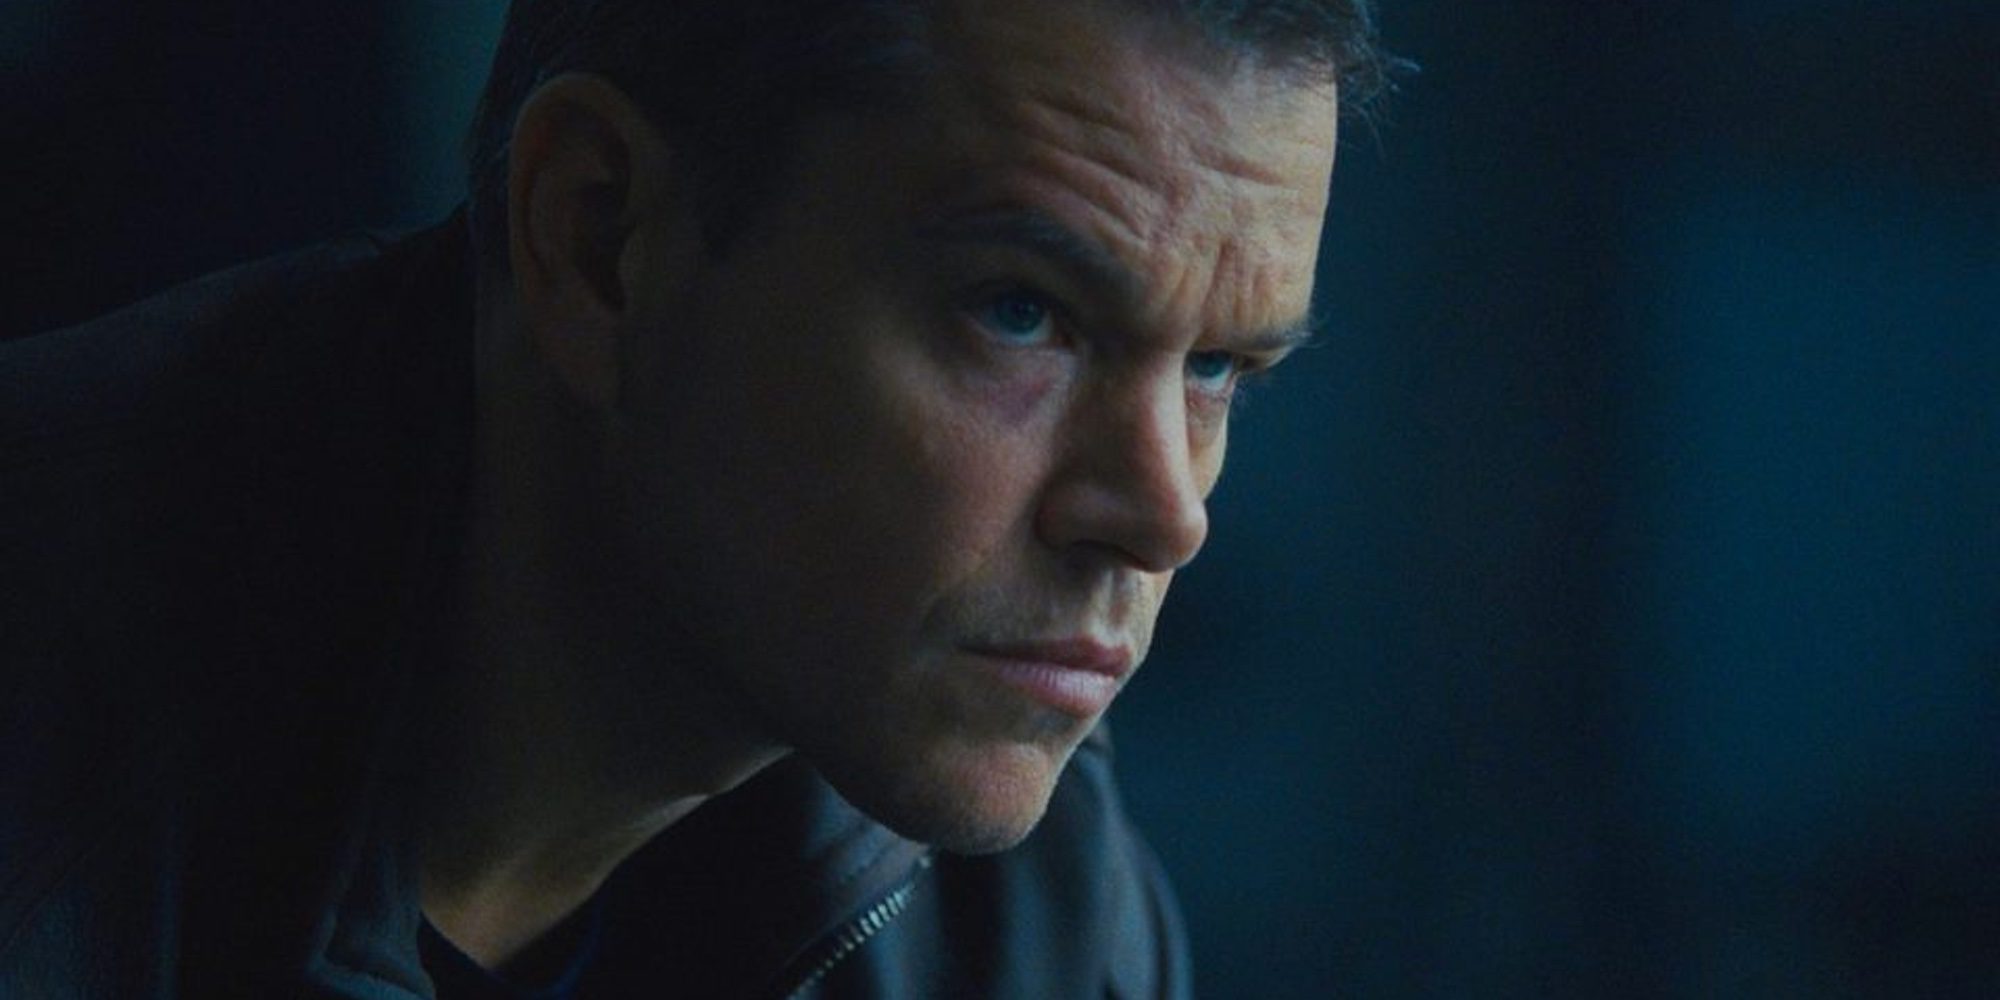 Matt Damon cambia 'Jason Bourne' por el Atlético de Madrid en su visita a Madrid